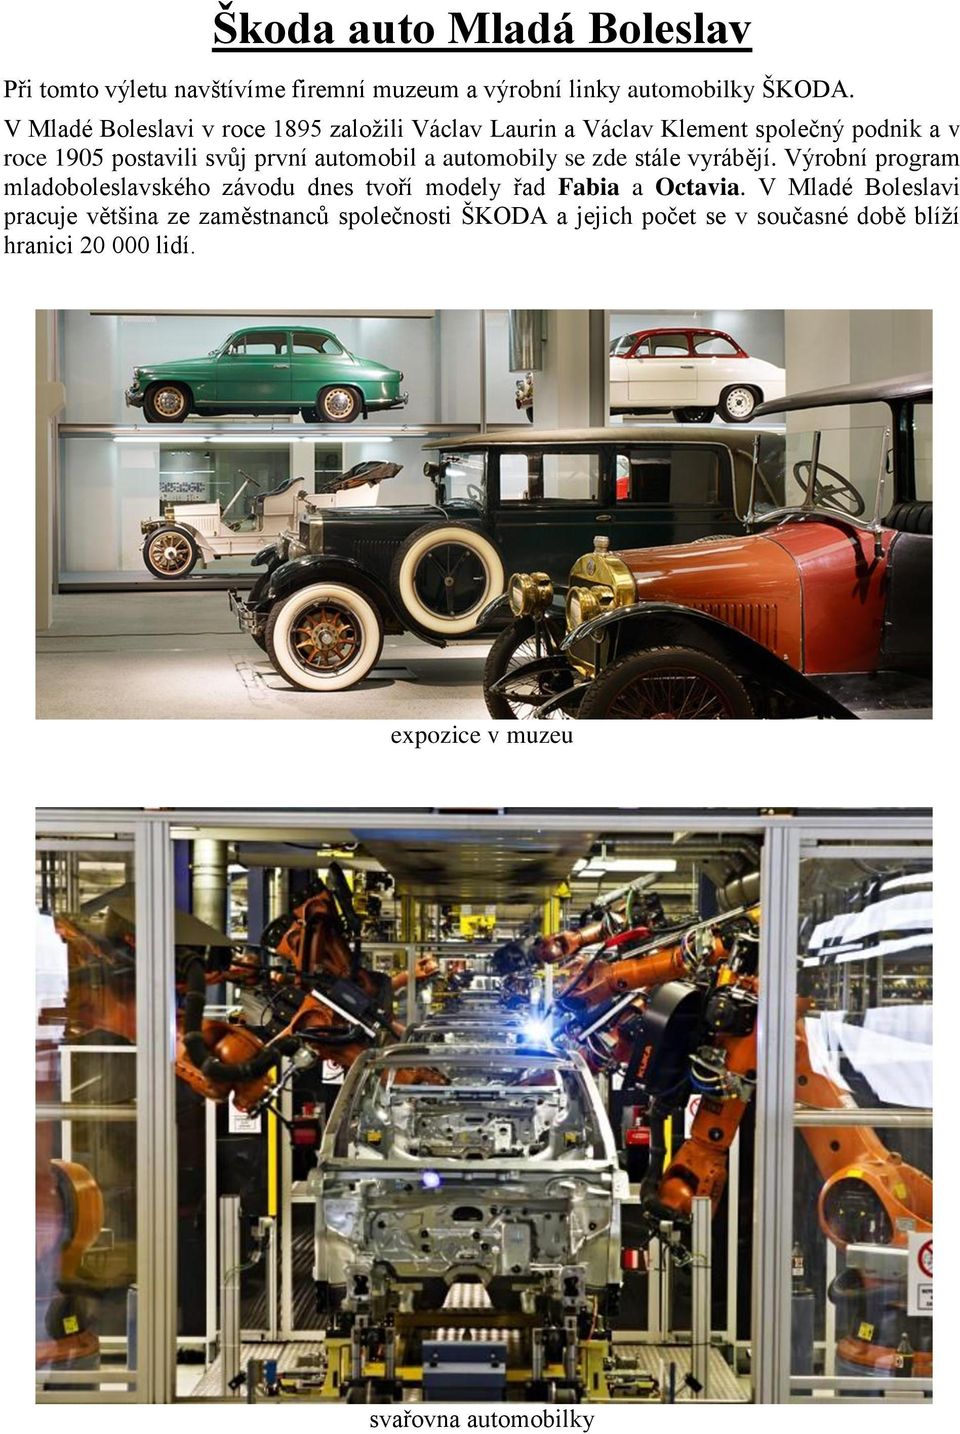 automobil a automobily se zde stále vyrábějí. Výrobní program mladoboleslavského závodu dnes tvoří modely řad Fabia a Octavia.